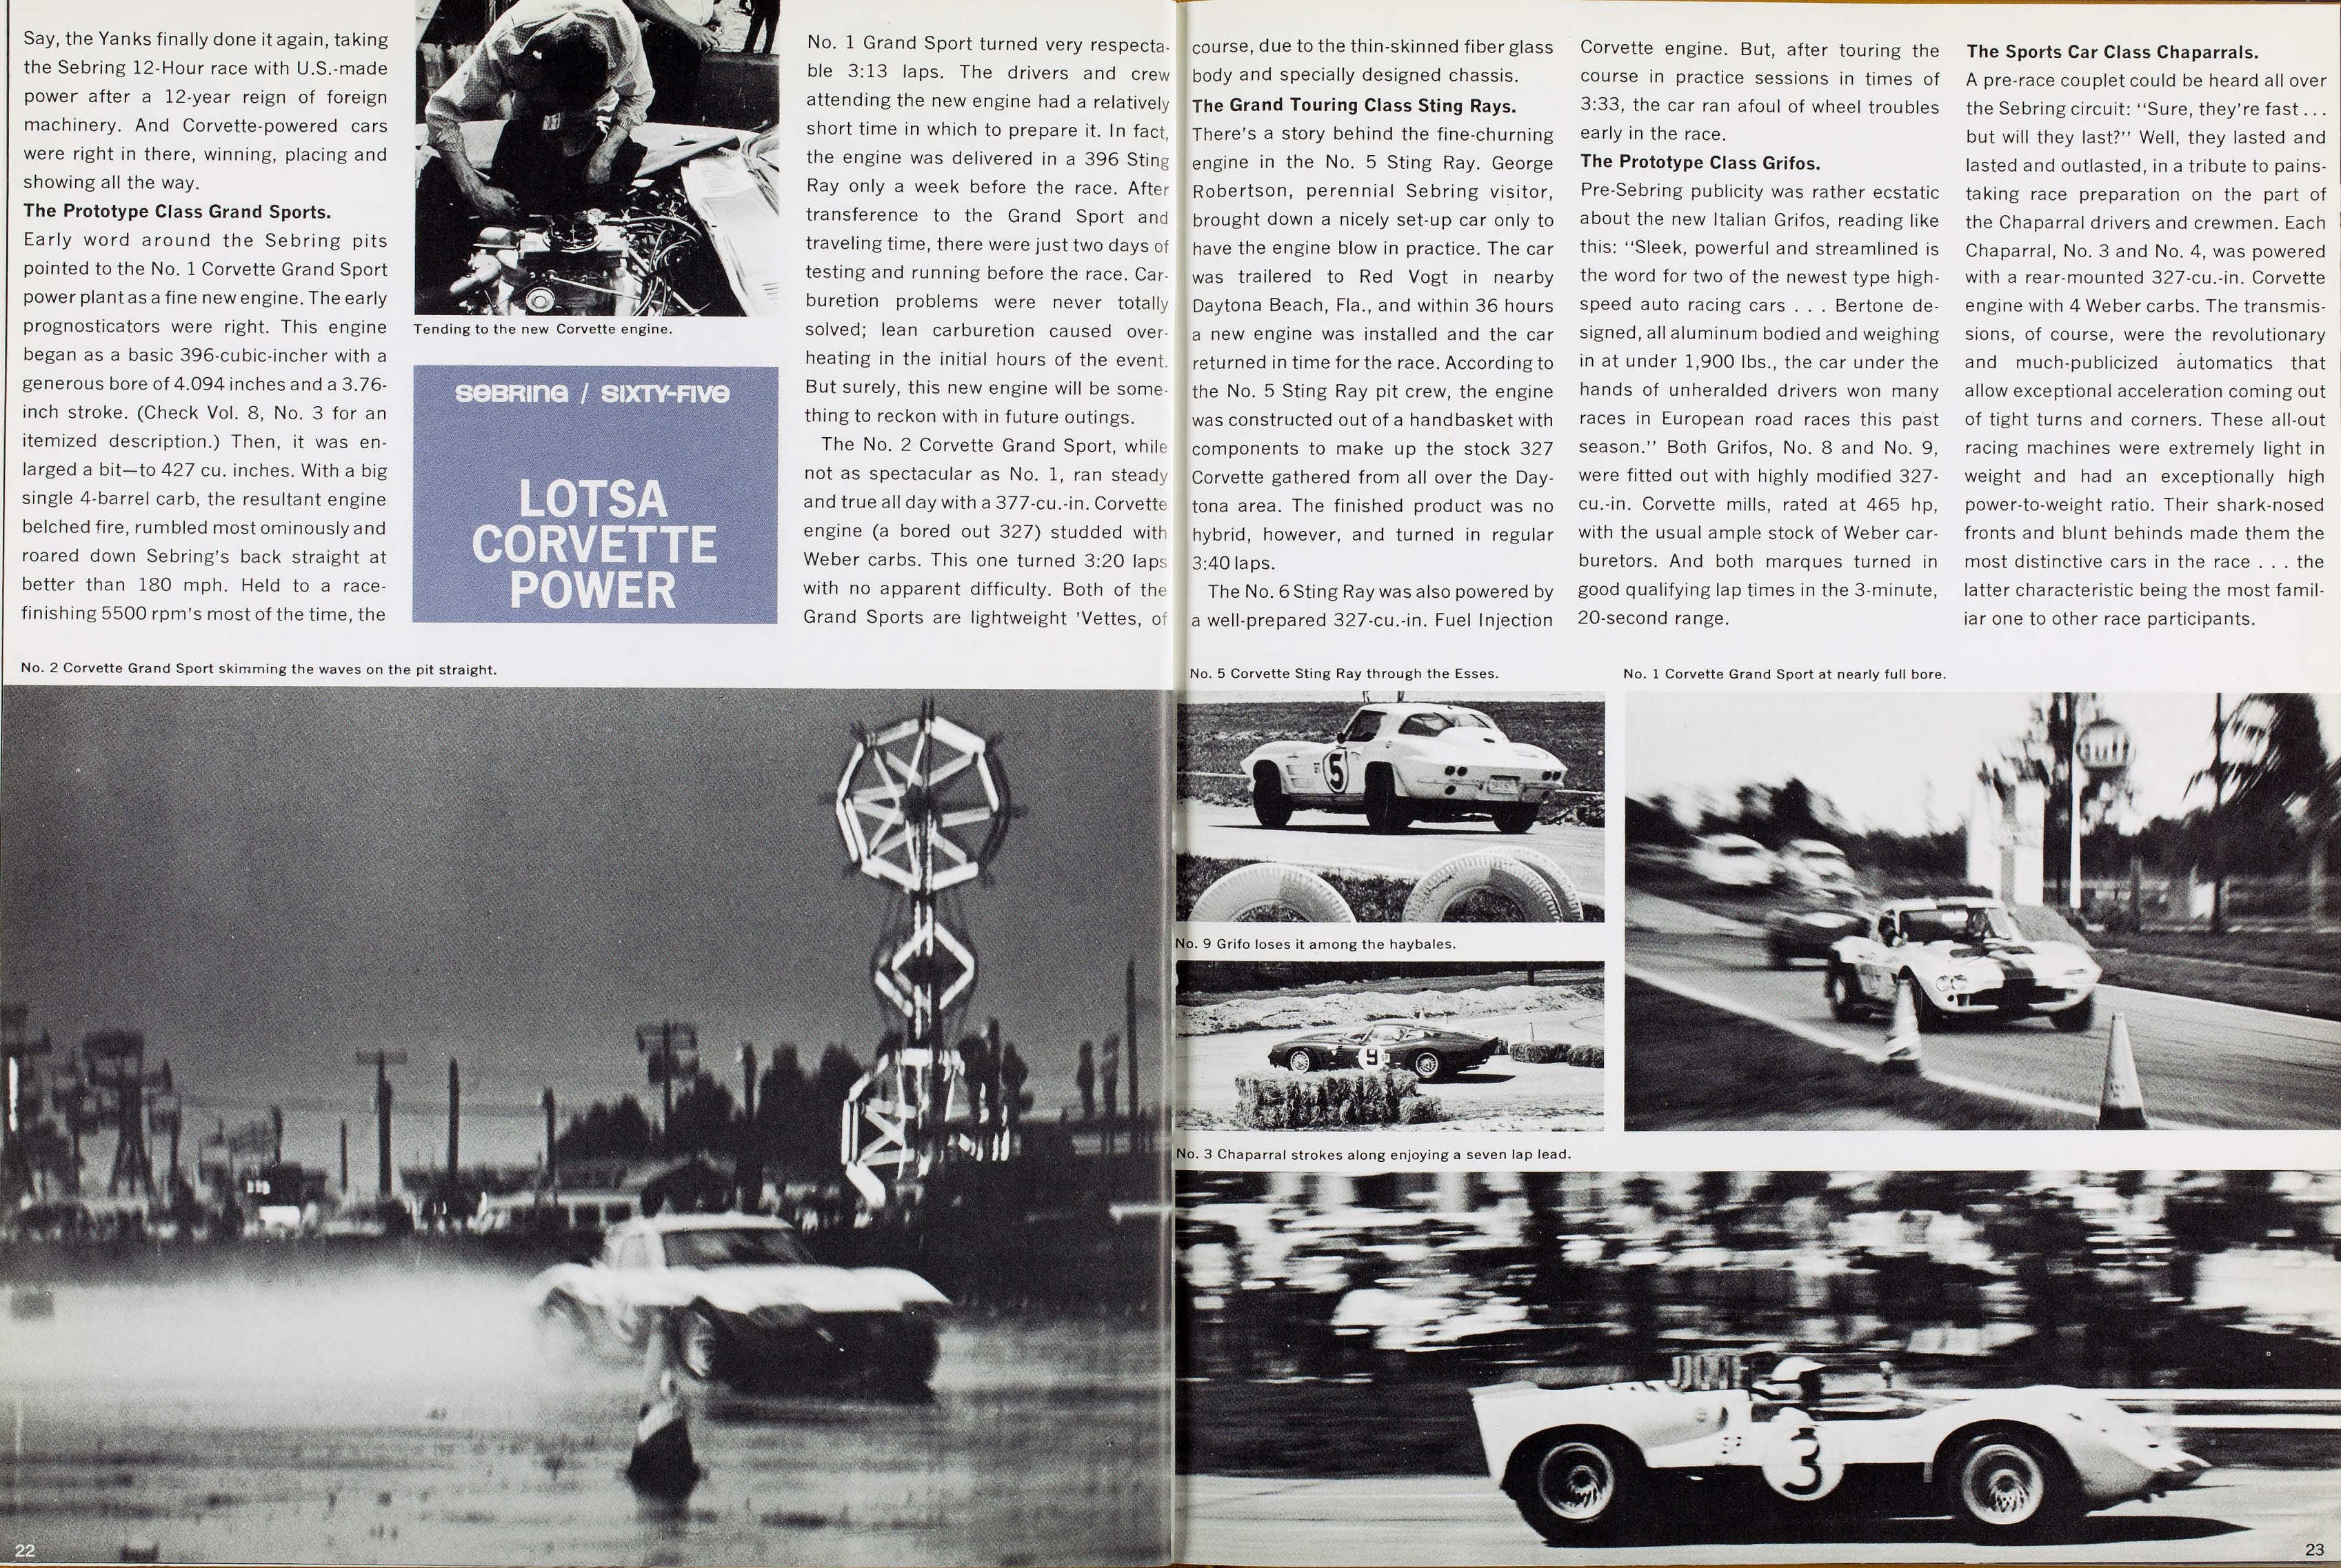 1965_Corvette_News_V8-4-22-23